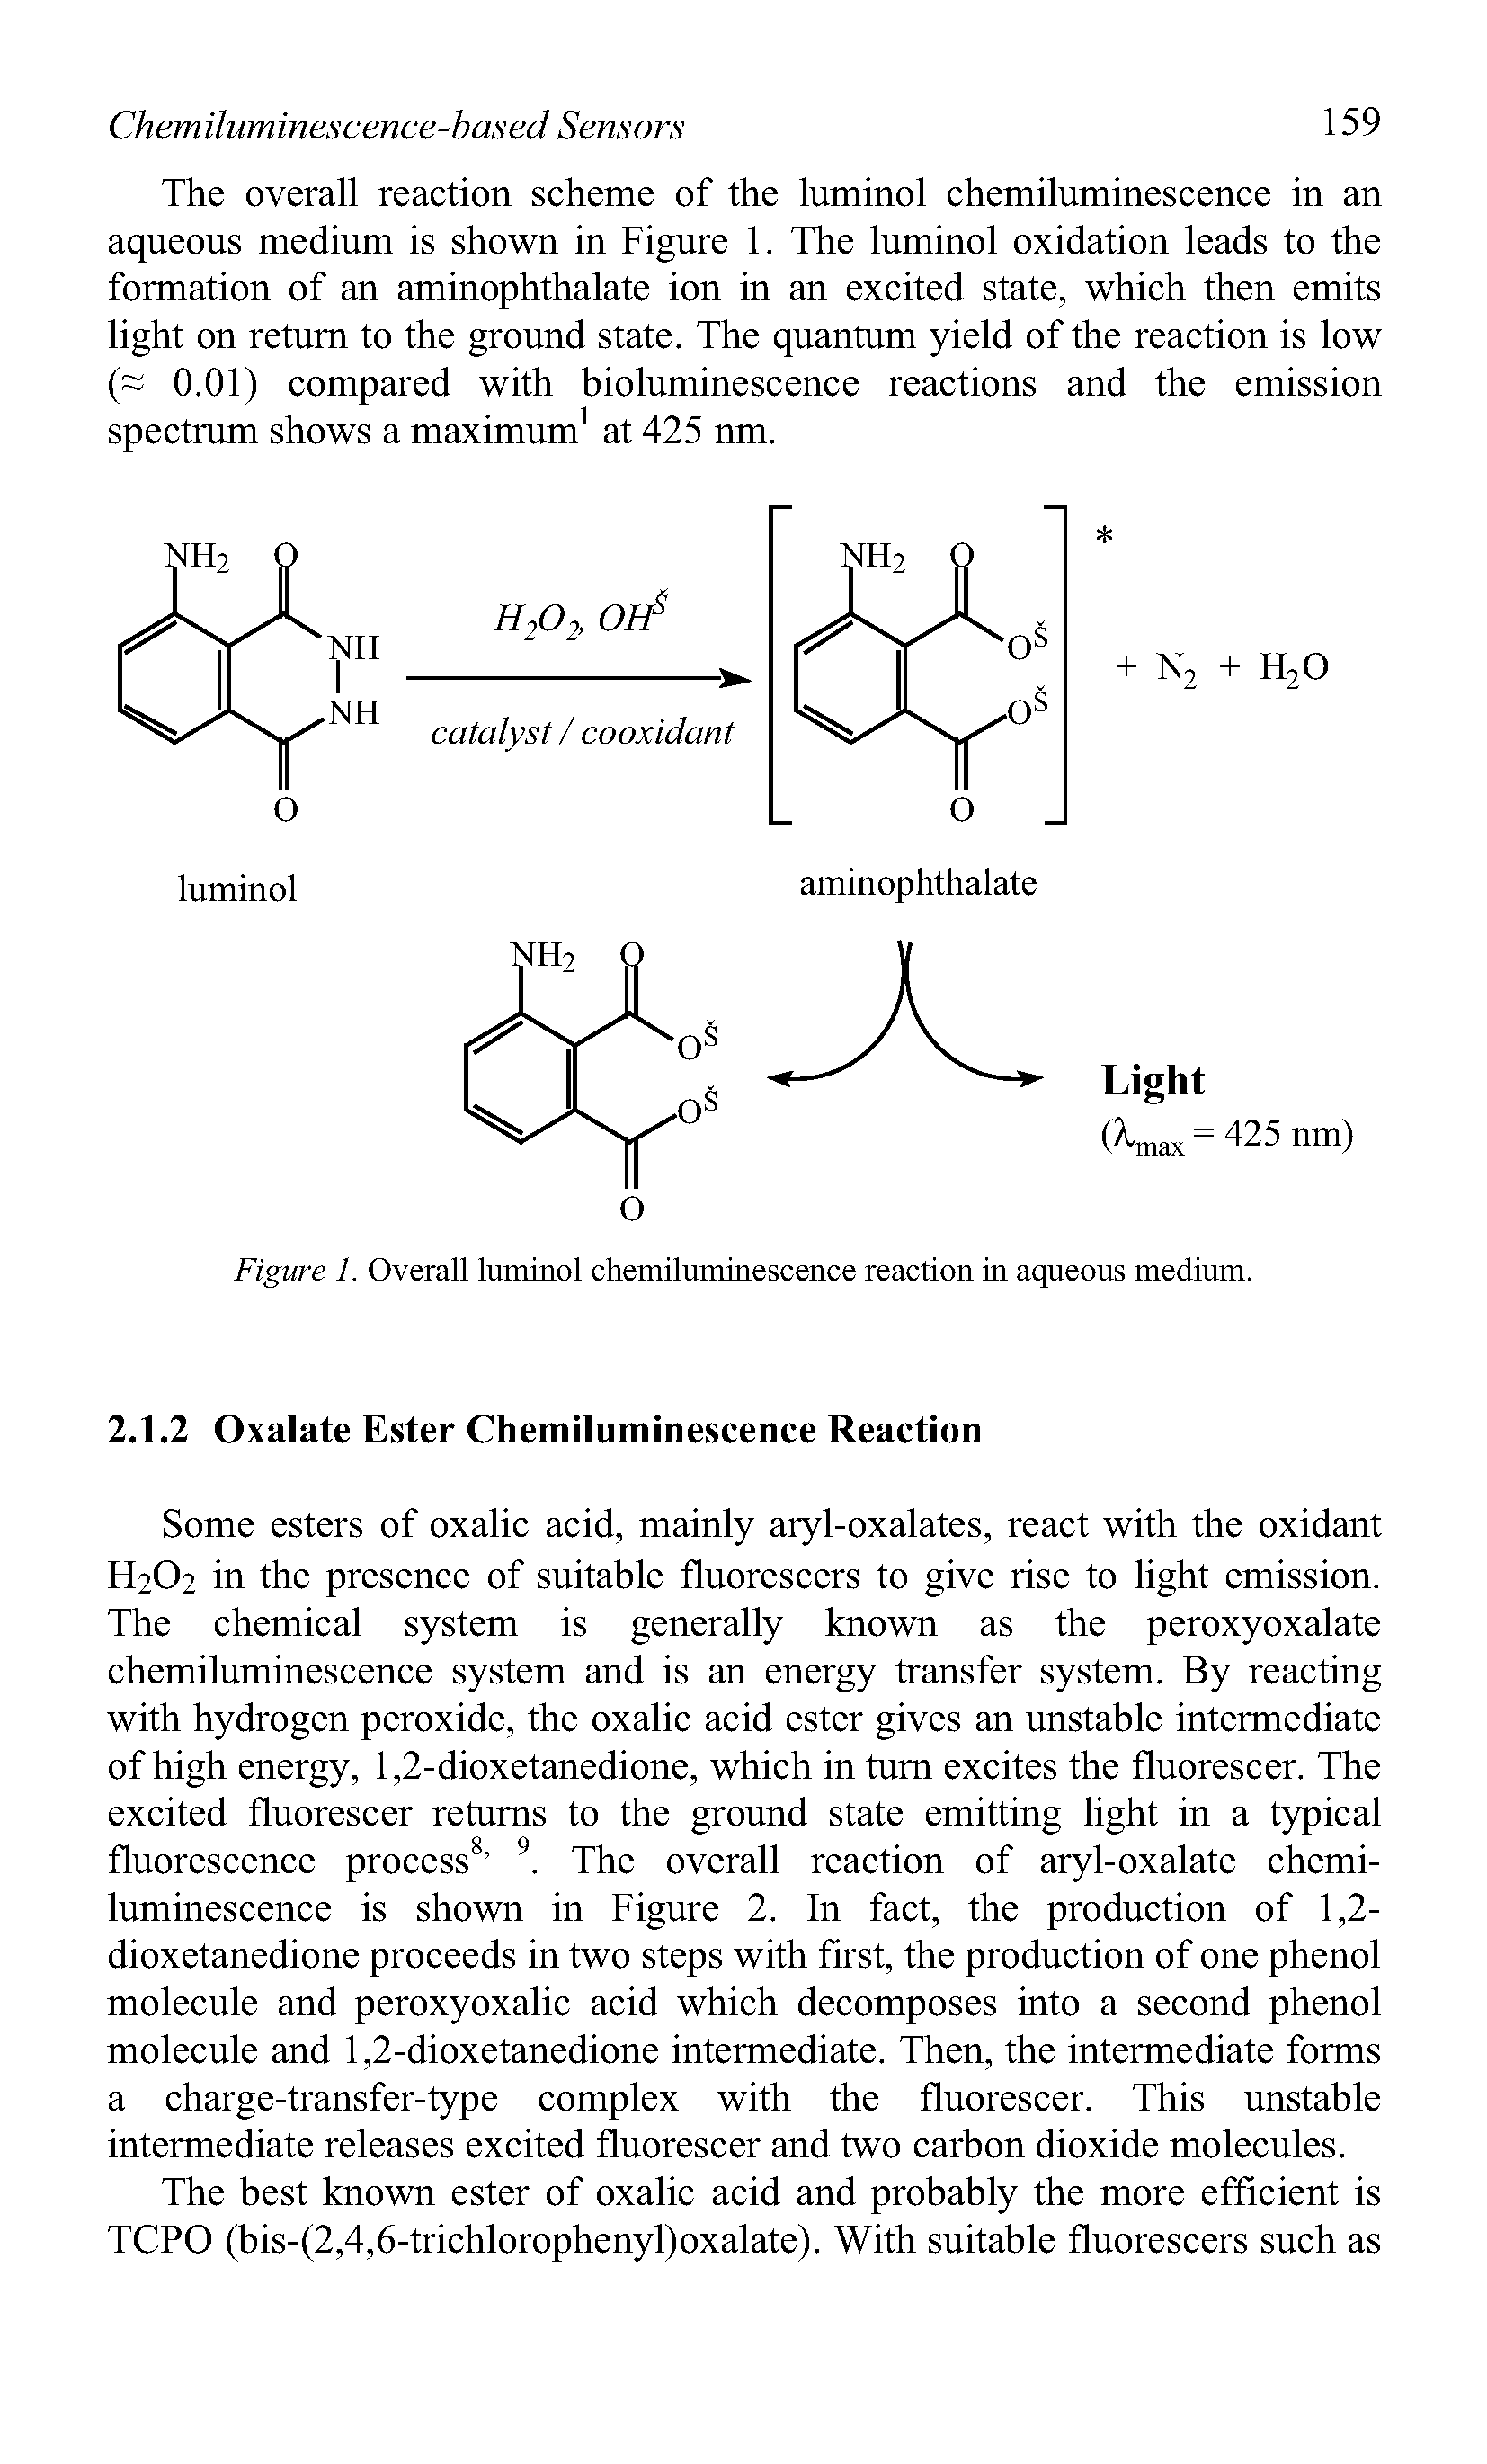 Figure 1. Overall luminol chemiluminescence reaction in aqueous medium.